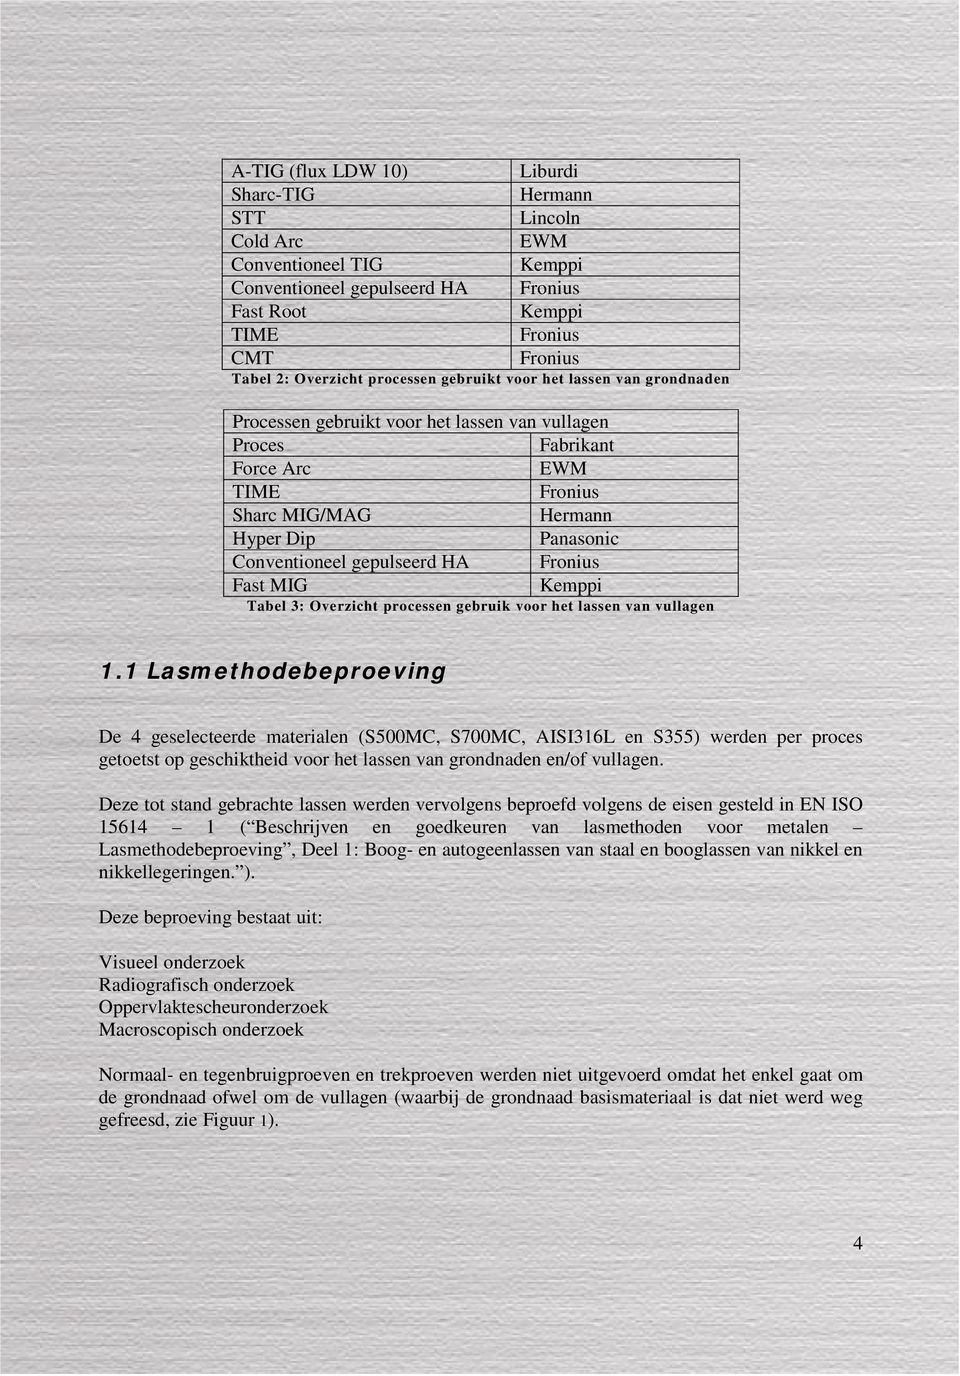 gepulseerd HA Fronius Fast MIG Kemppi Tabel 3: Overzicht processen gebruik voor het lassen van vullagen 1.